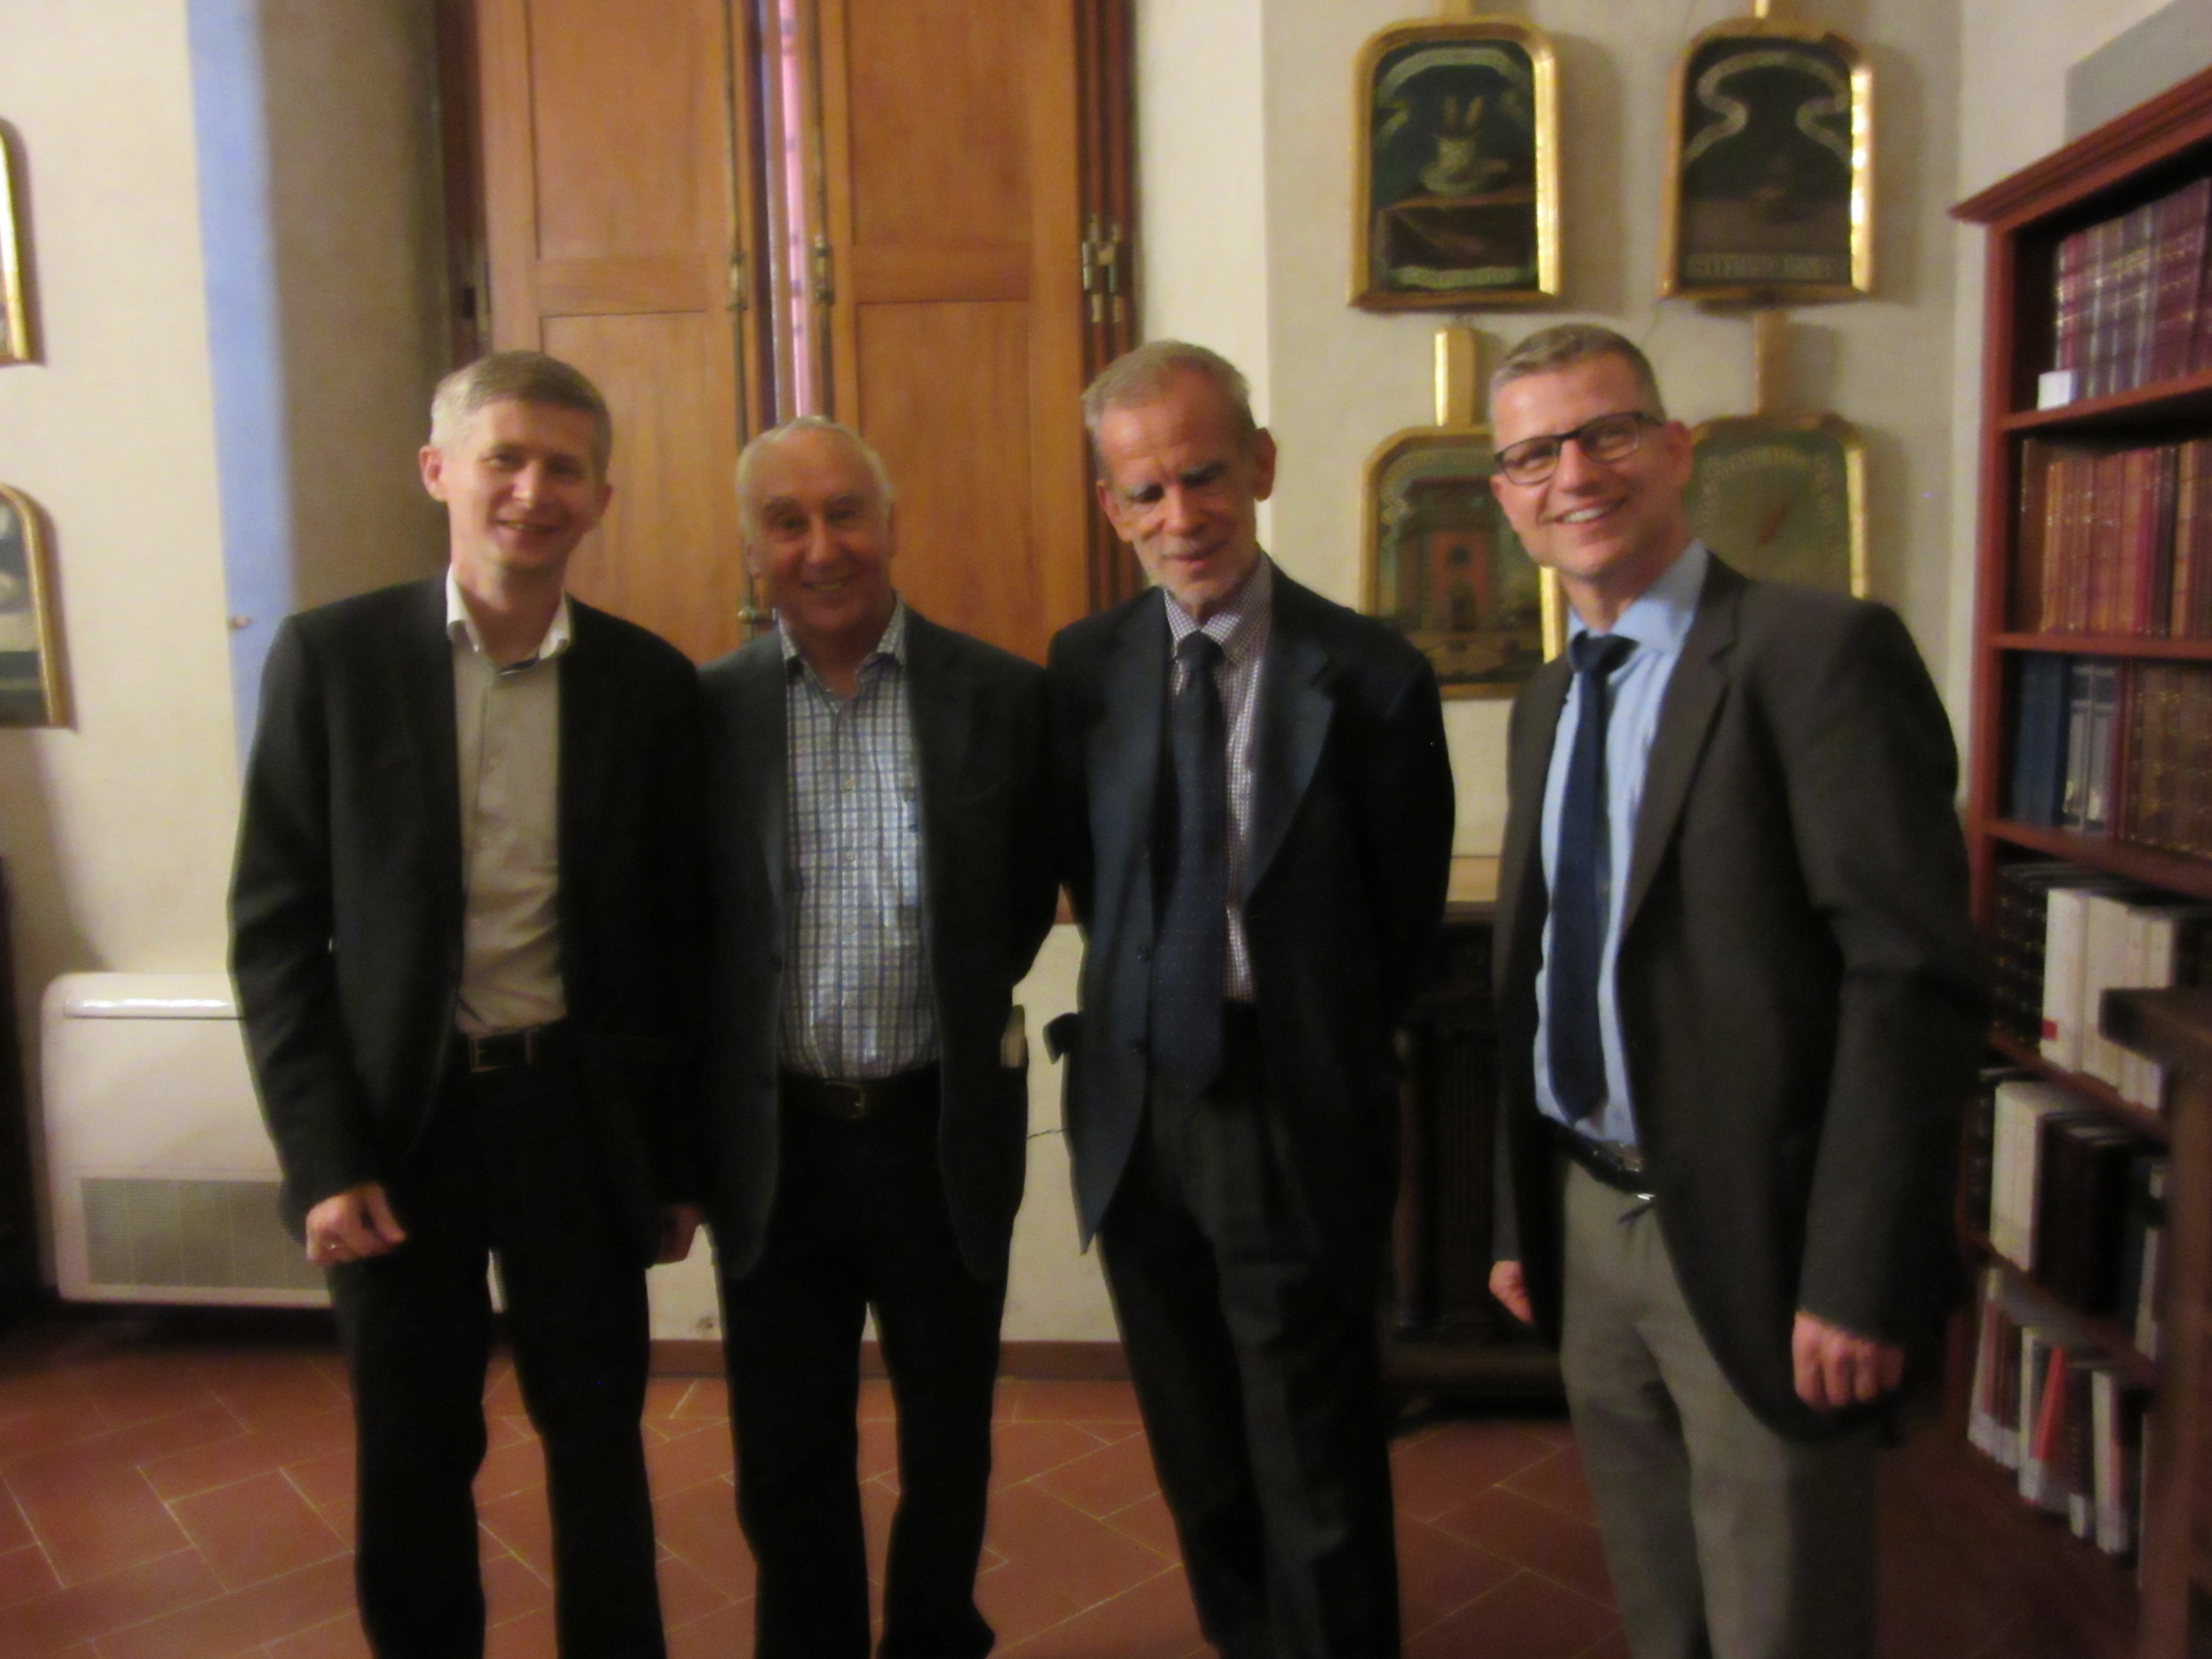 R. Sosnowski, J. Brincat, L. Serianni, M. Heinz